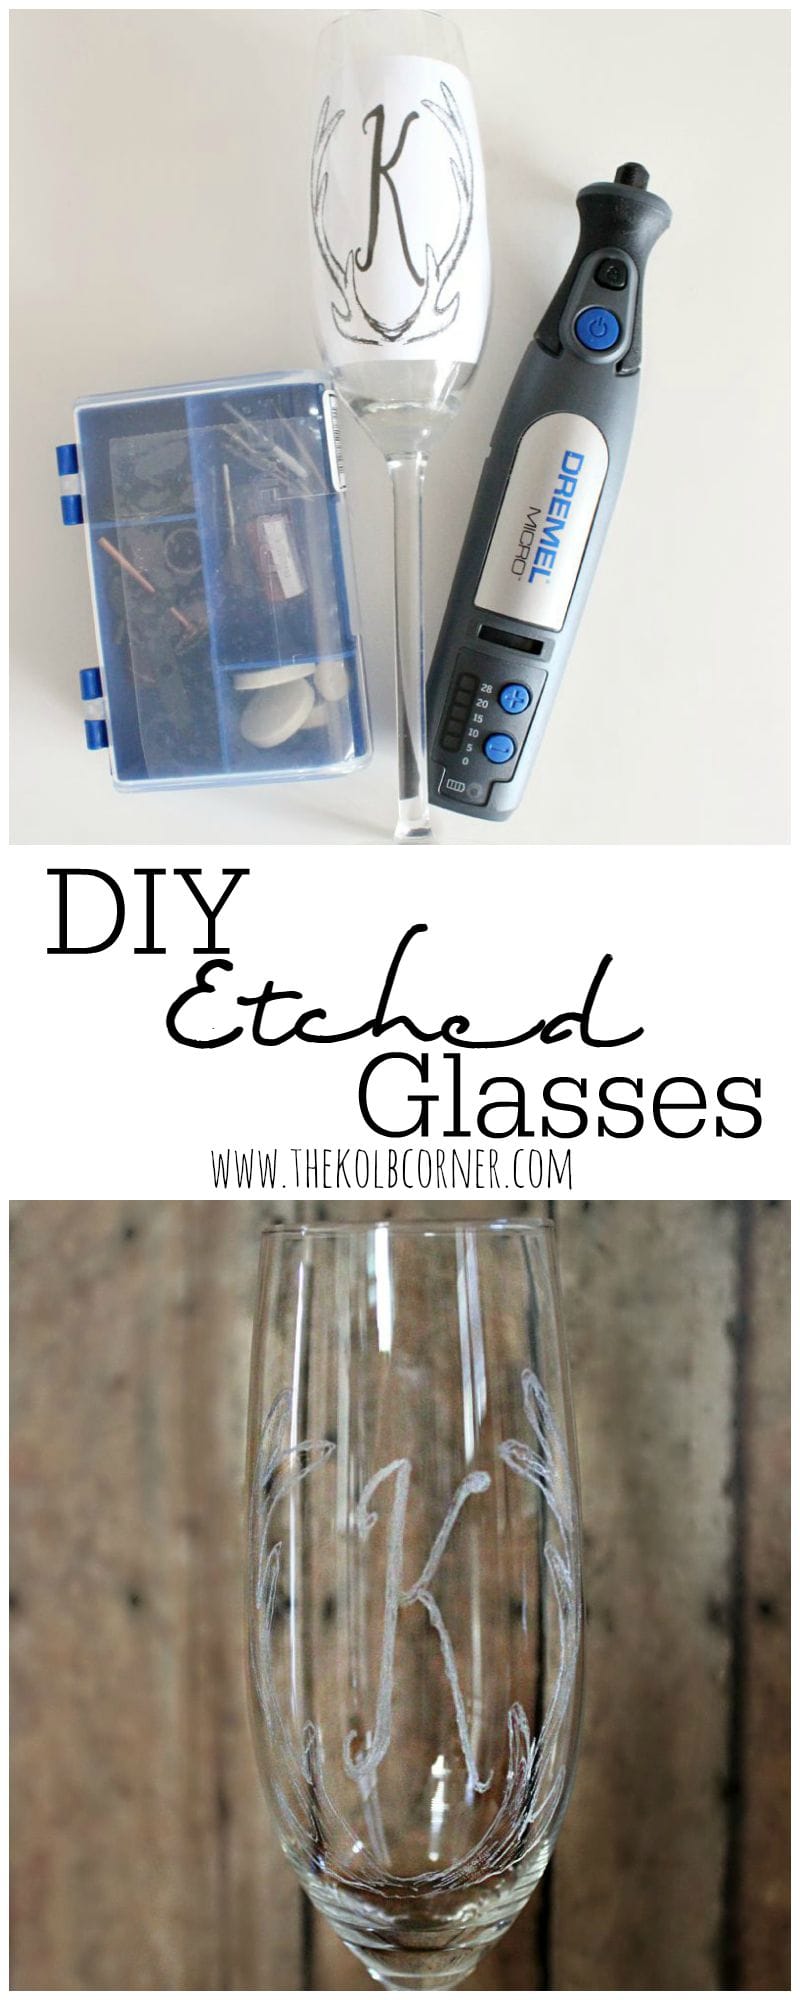 DIY Etched Glasses